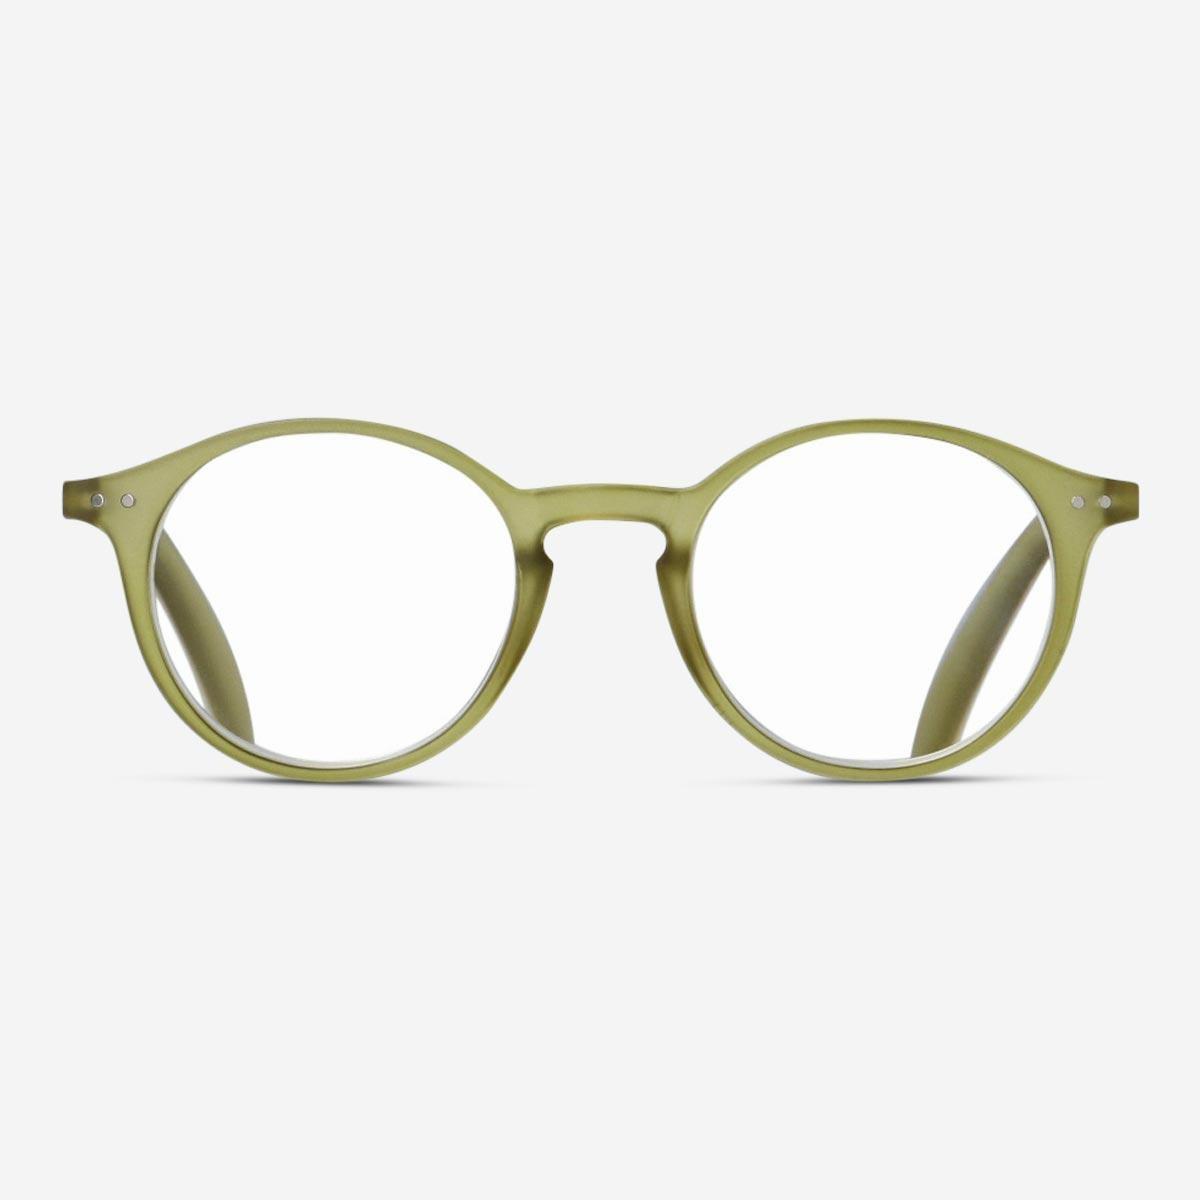 Green reading glasses. + 1.0